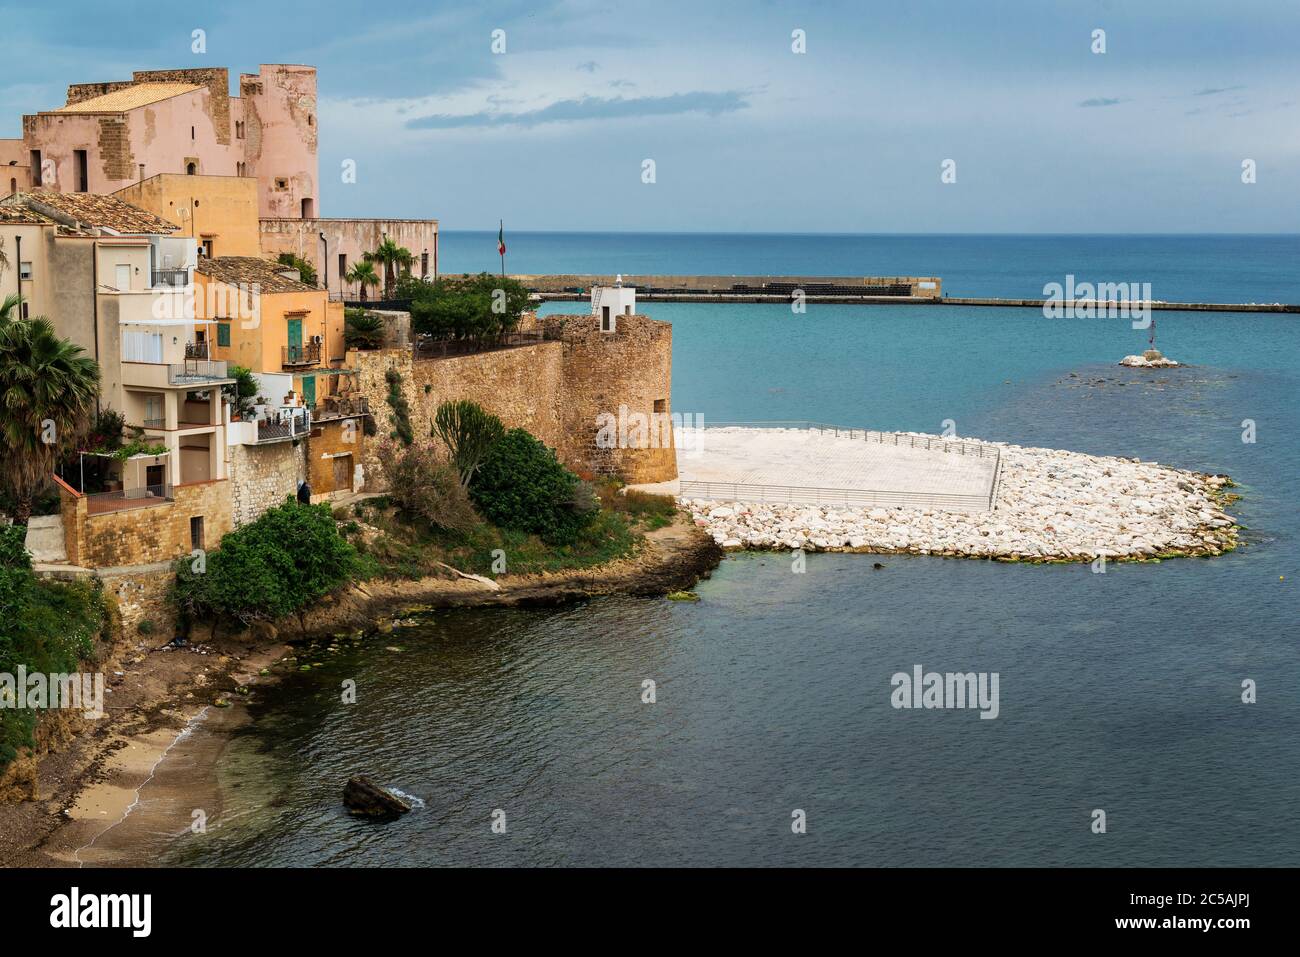 Norman Arab Castle, Castello Arabo-Normanno, Medieval Fortress, Castellammare  del Golfo, Sicily, Italy Stock Photo - Alamy